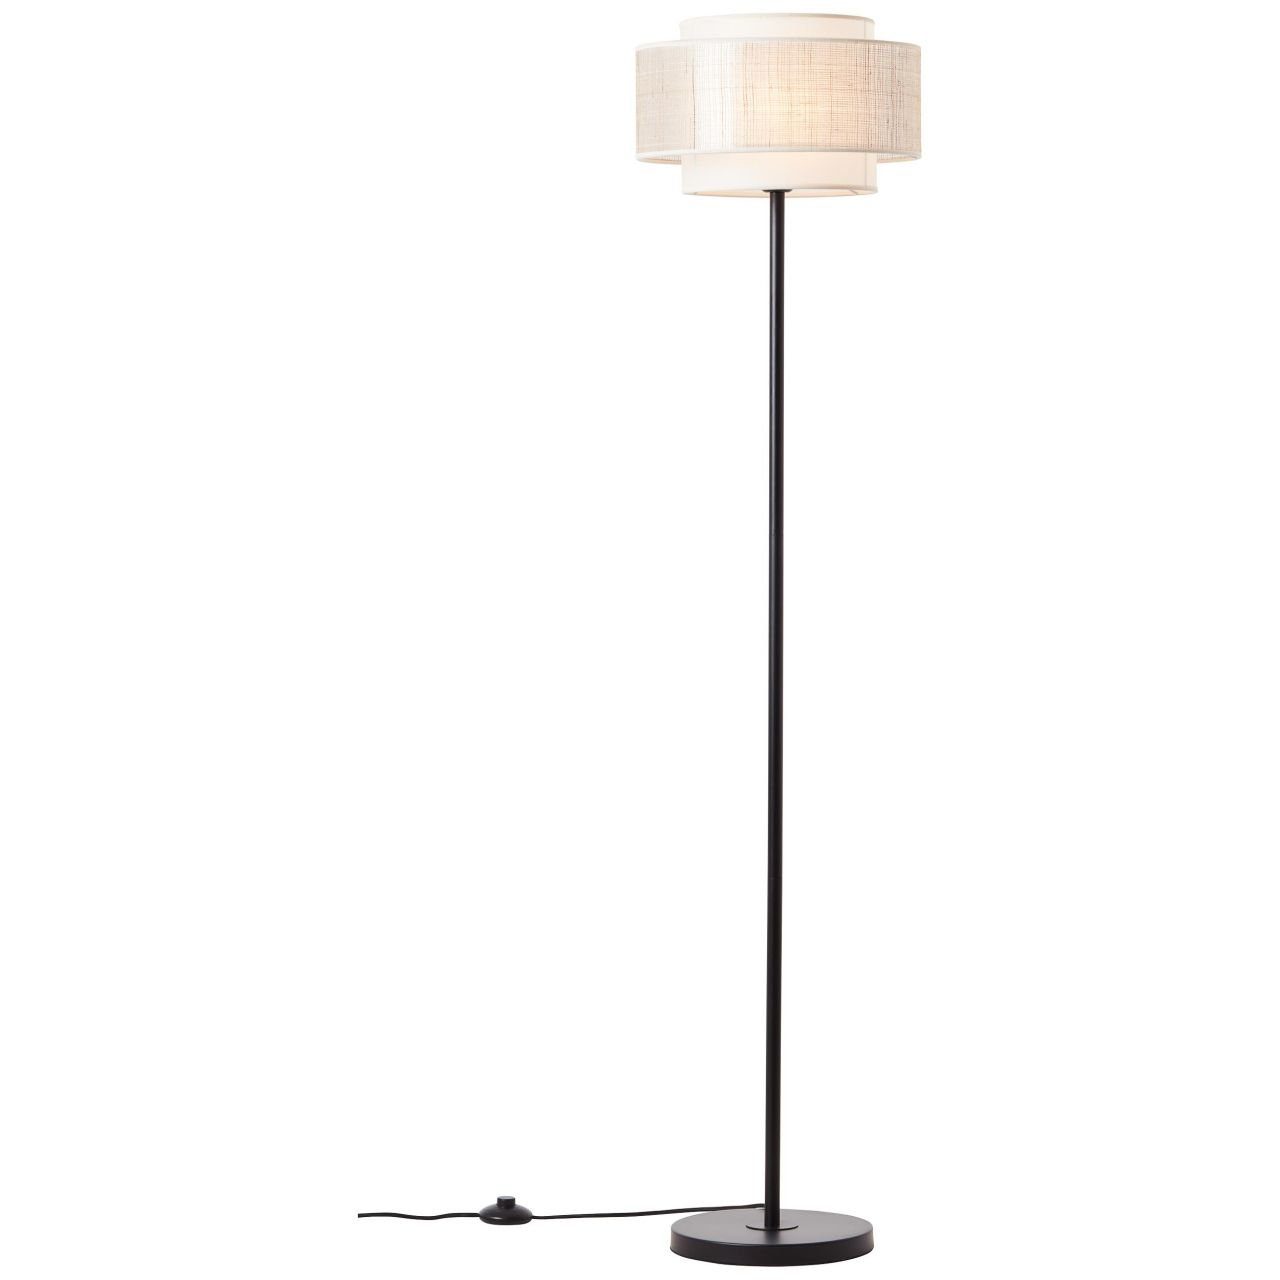 Lampe, A60, 42W, Fuß 1x Standleuchte Mit Brilliant Stehlampe schwarz/beige, 1flg Odar, E27, Odar